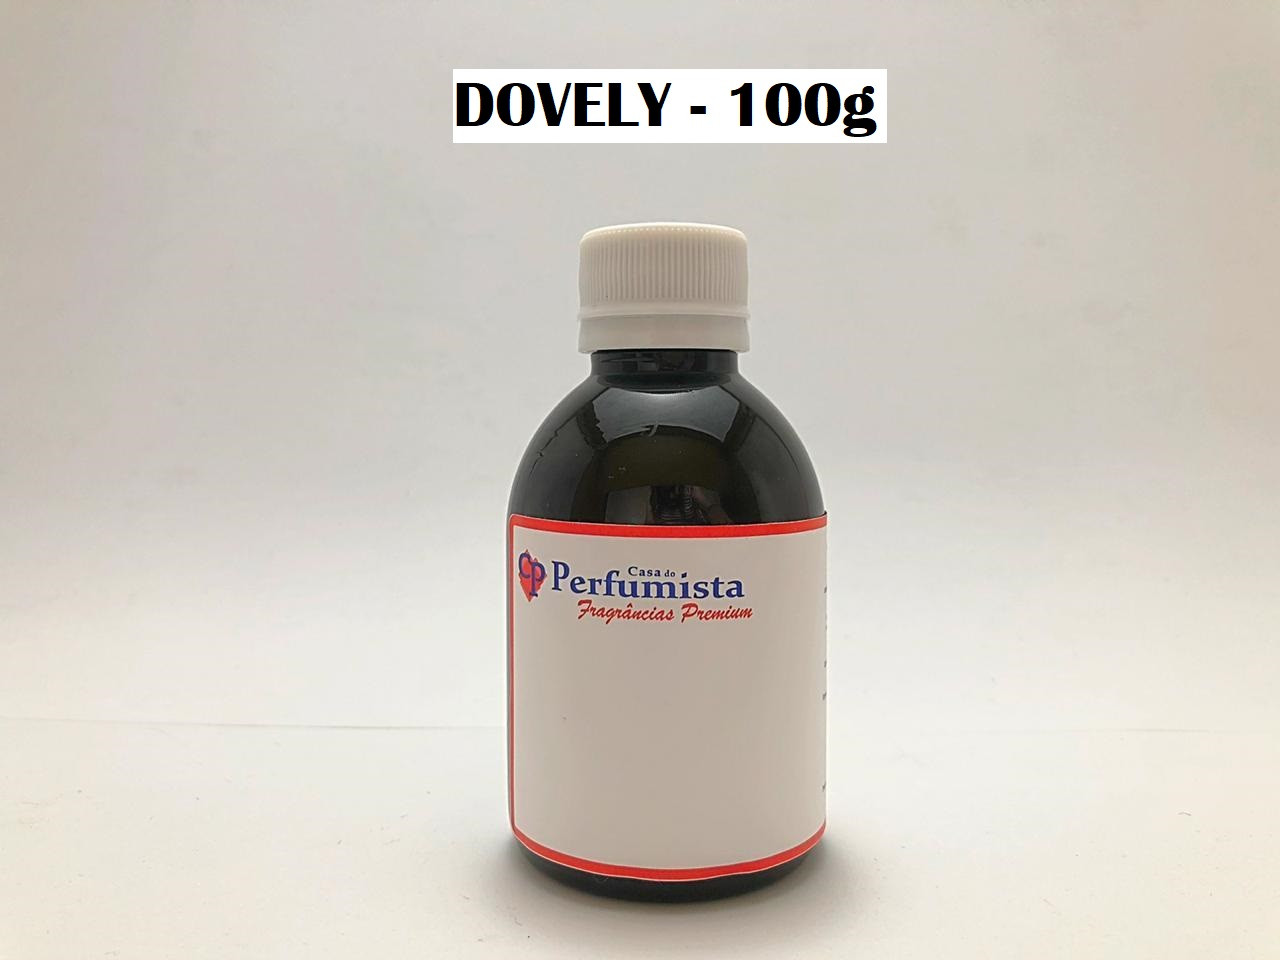 DOVELY - 100g